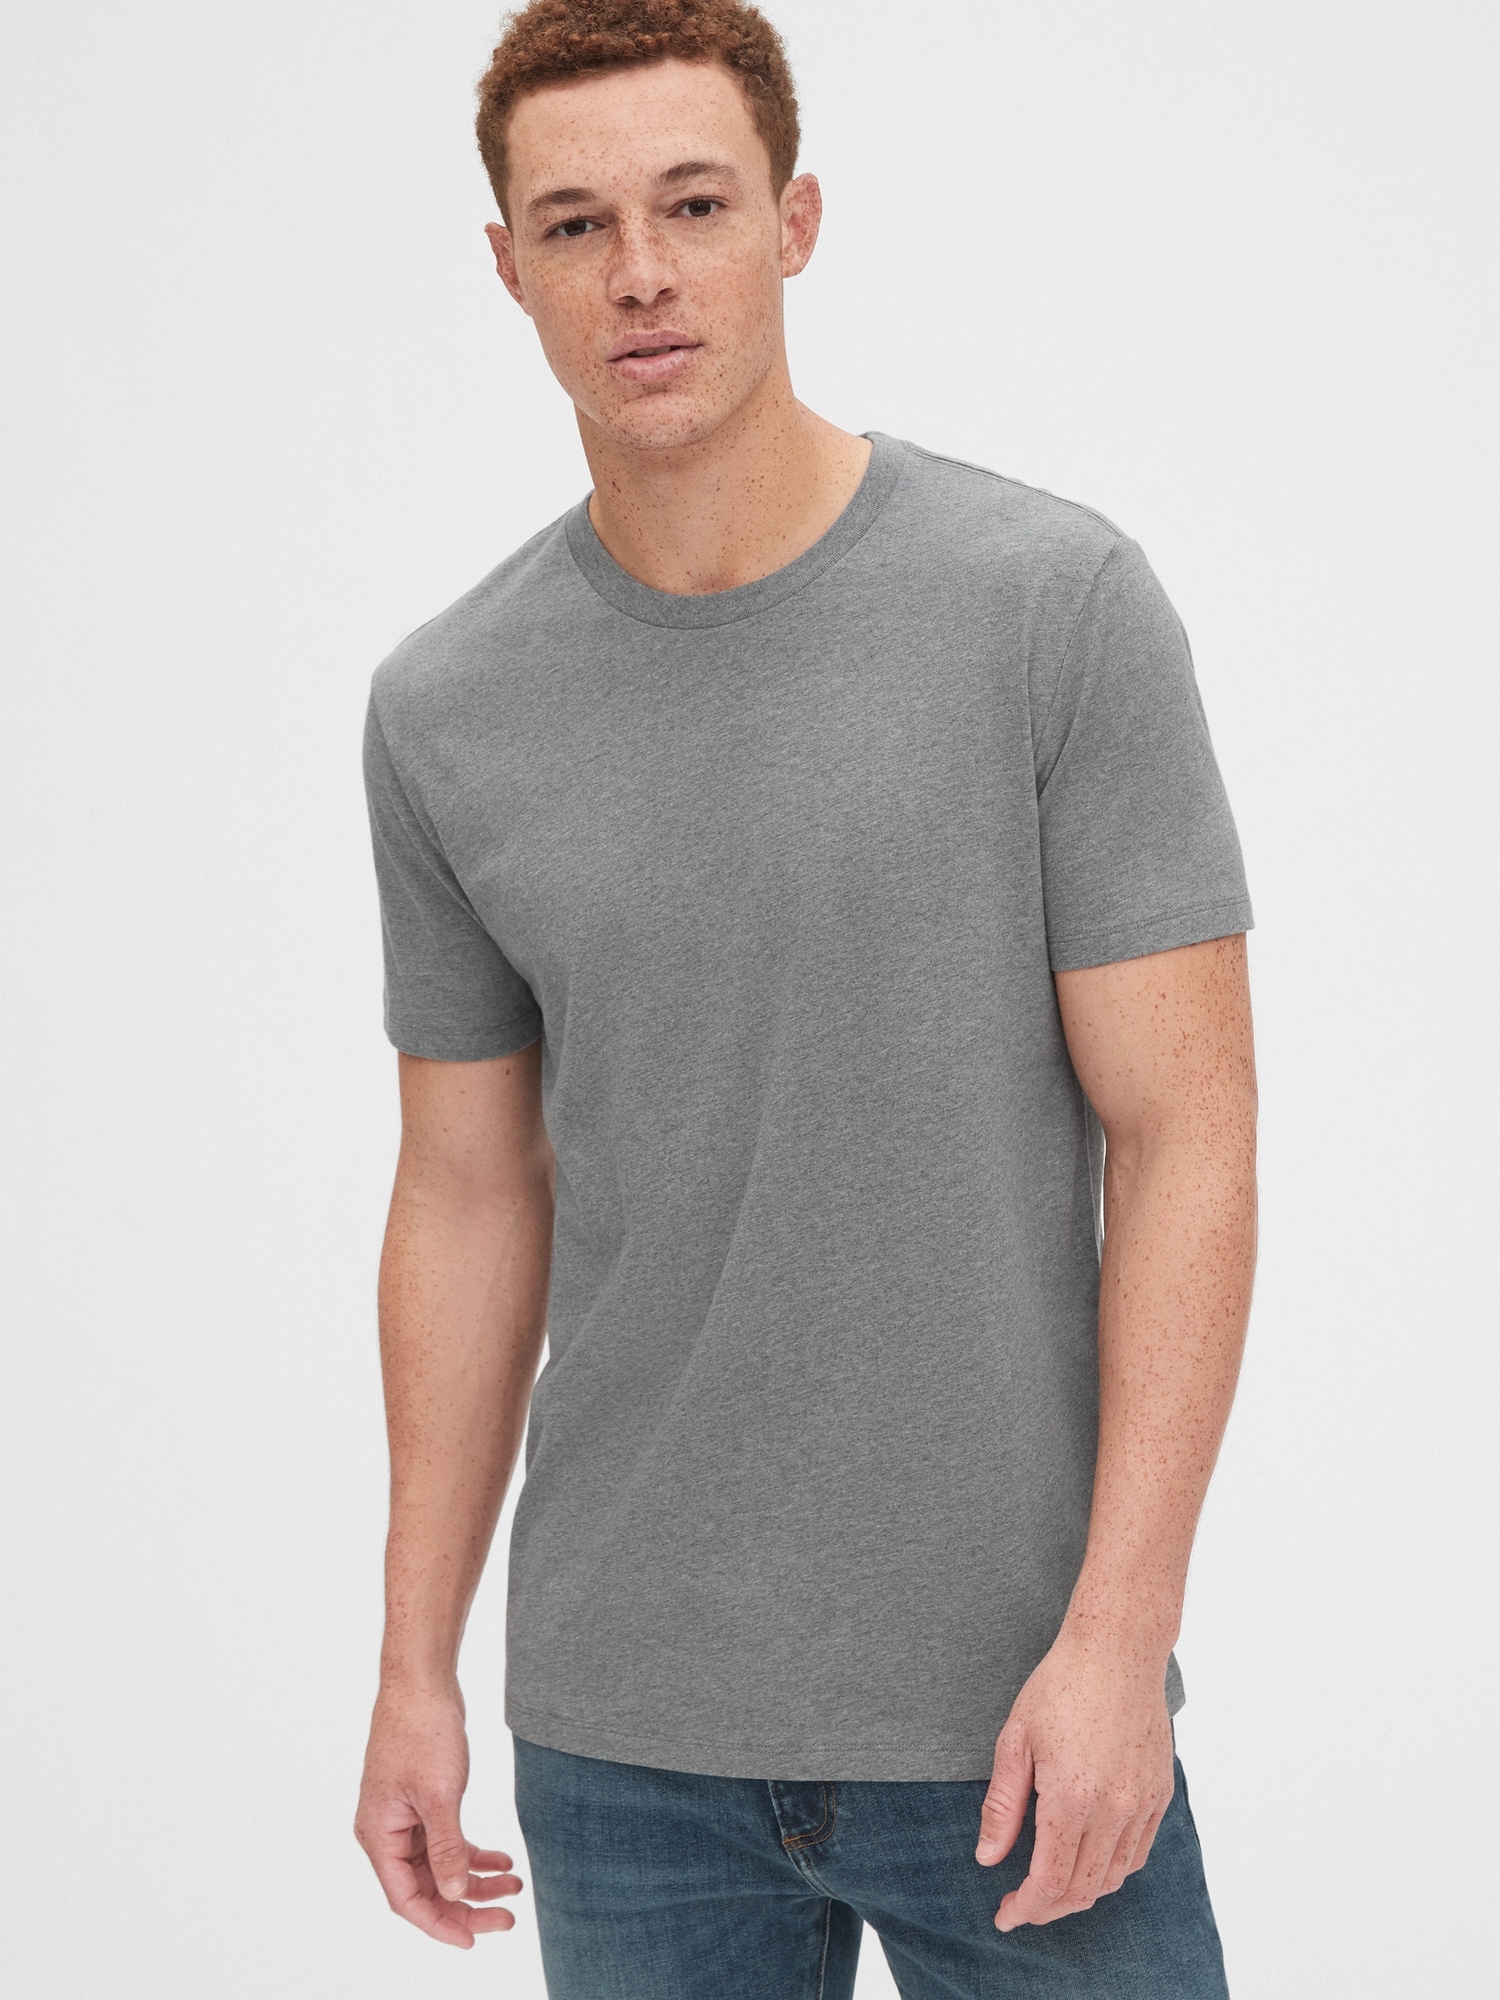 Men's Gray Crew Neck T-Shirt, Crinkle Shirt